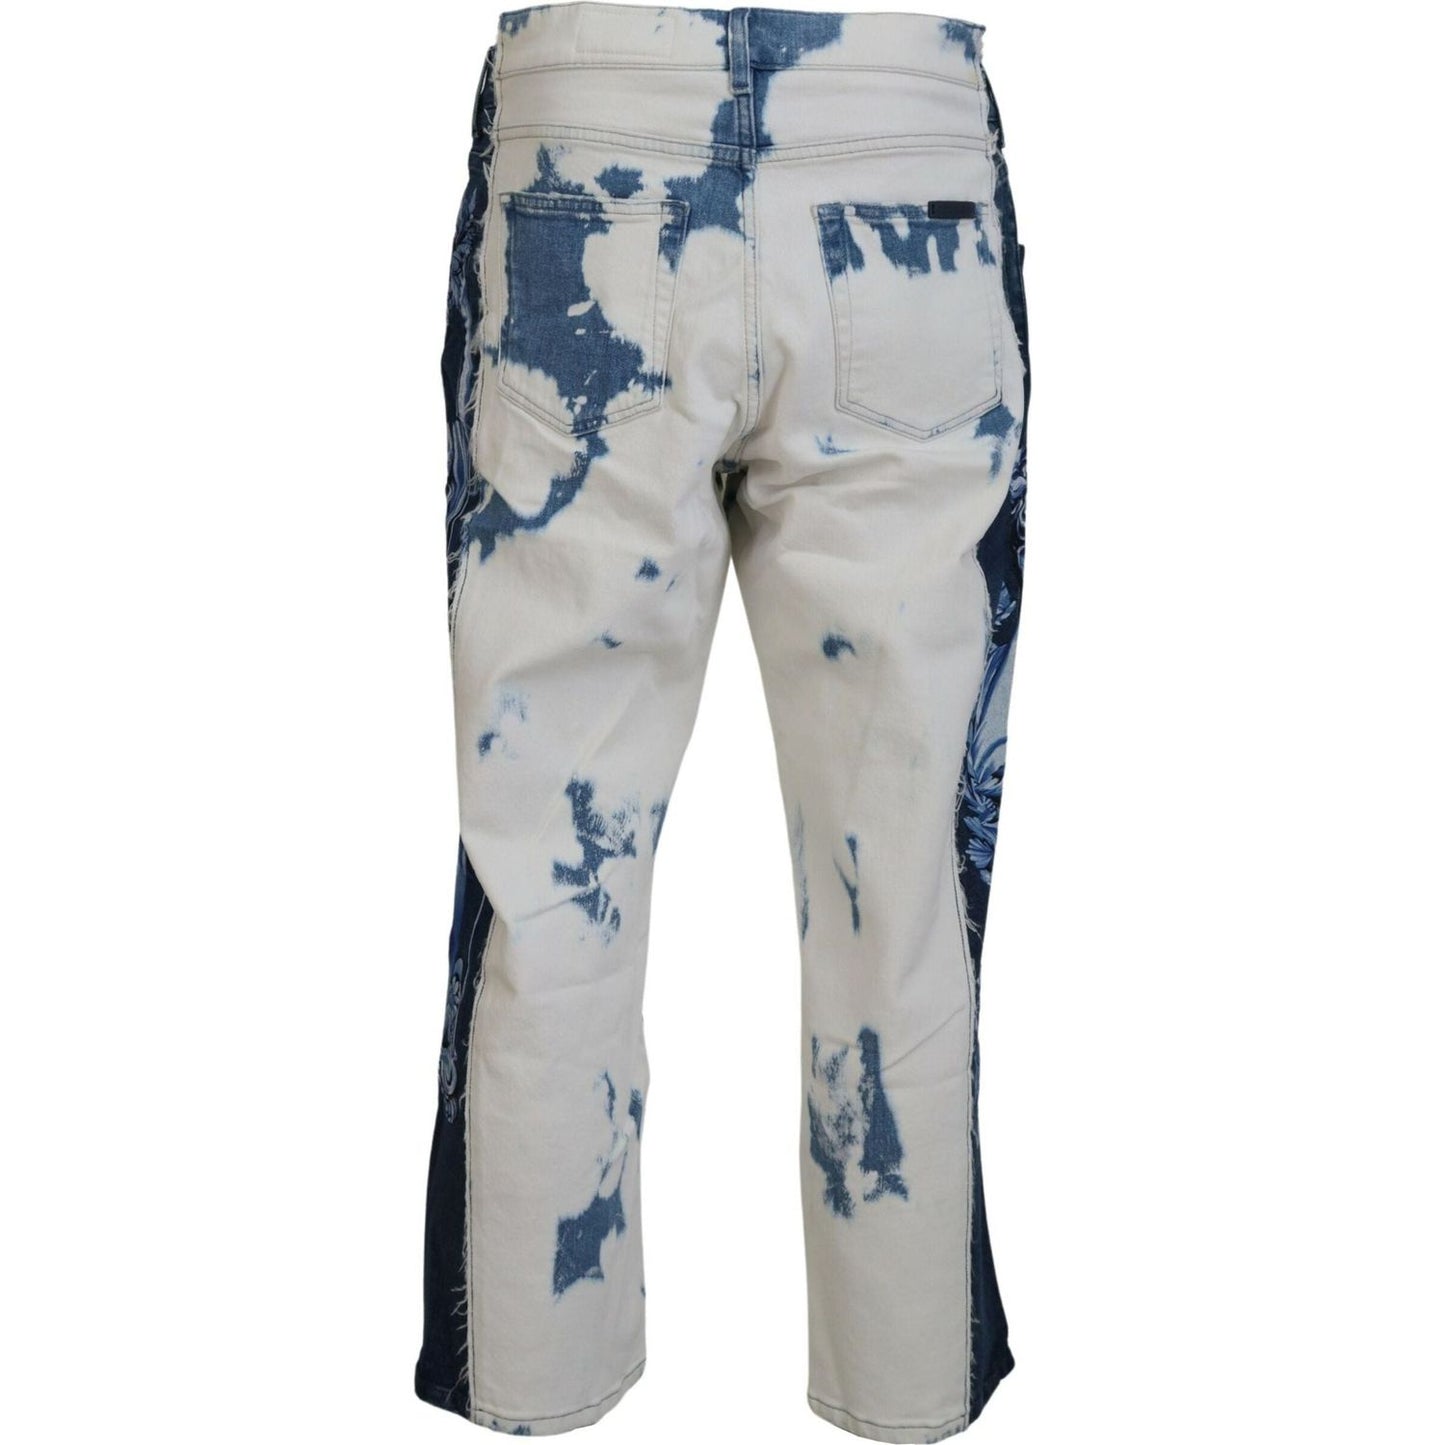 Dolce & Gabbana Elegant Loose Fit Denim Pants with Unique Print blue-ceasar-denim-cotton-loose-fit-jeans